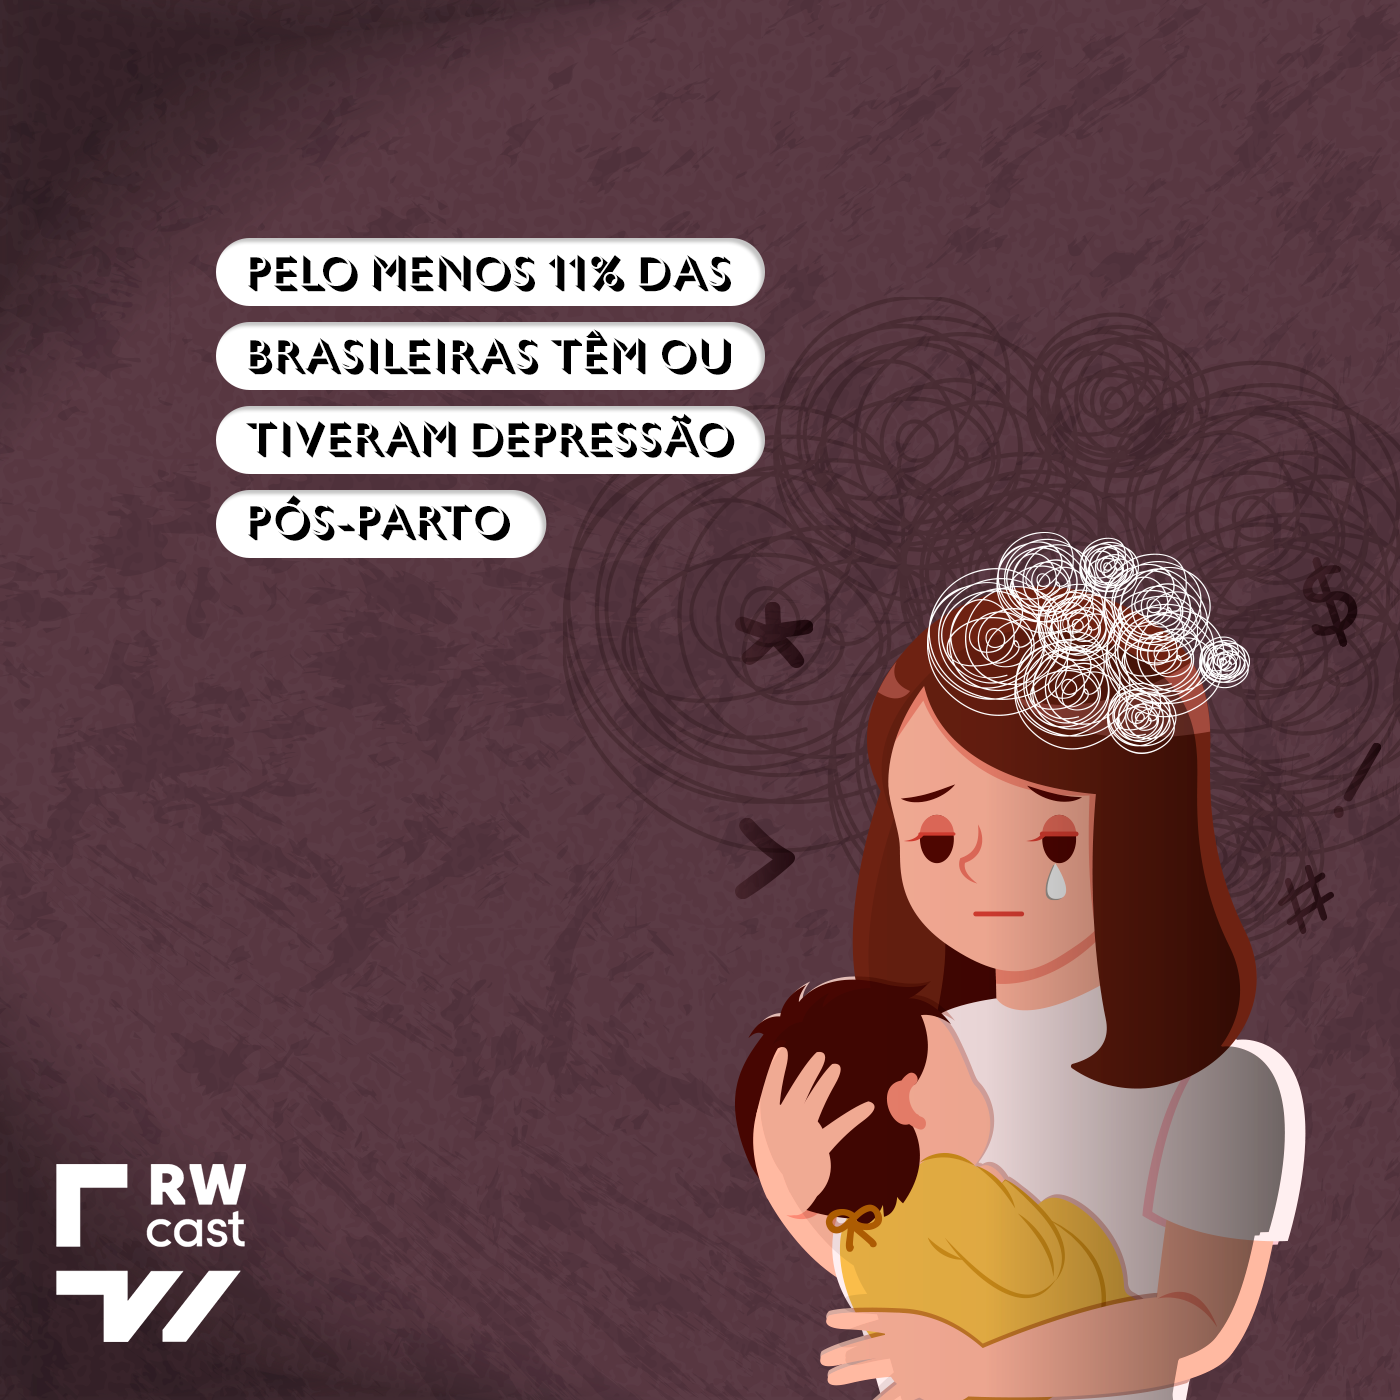 Pelo menos 11% das brasileiras têm ou tiveram depressão pós-parto